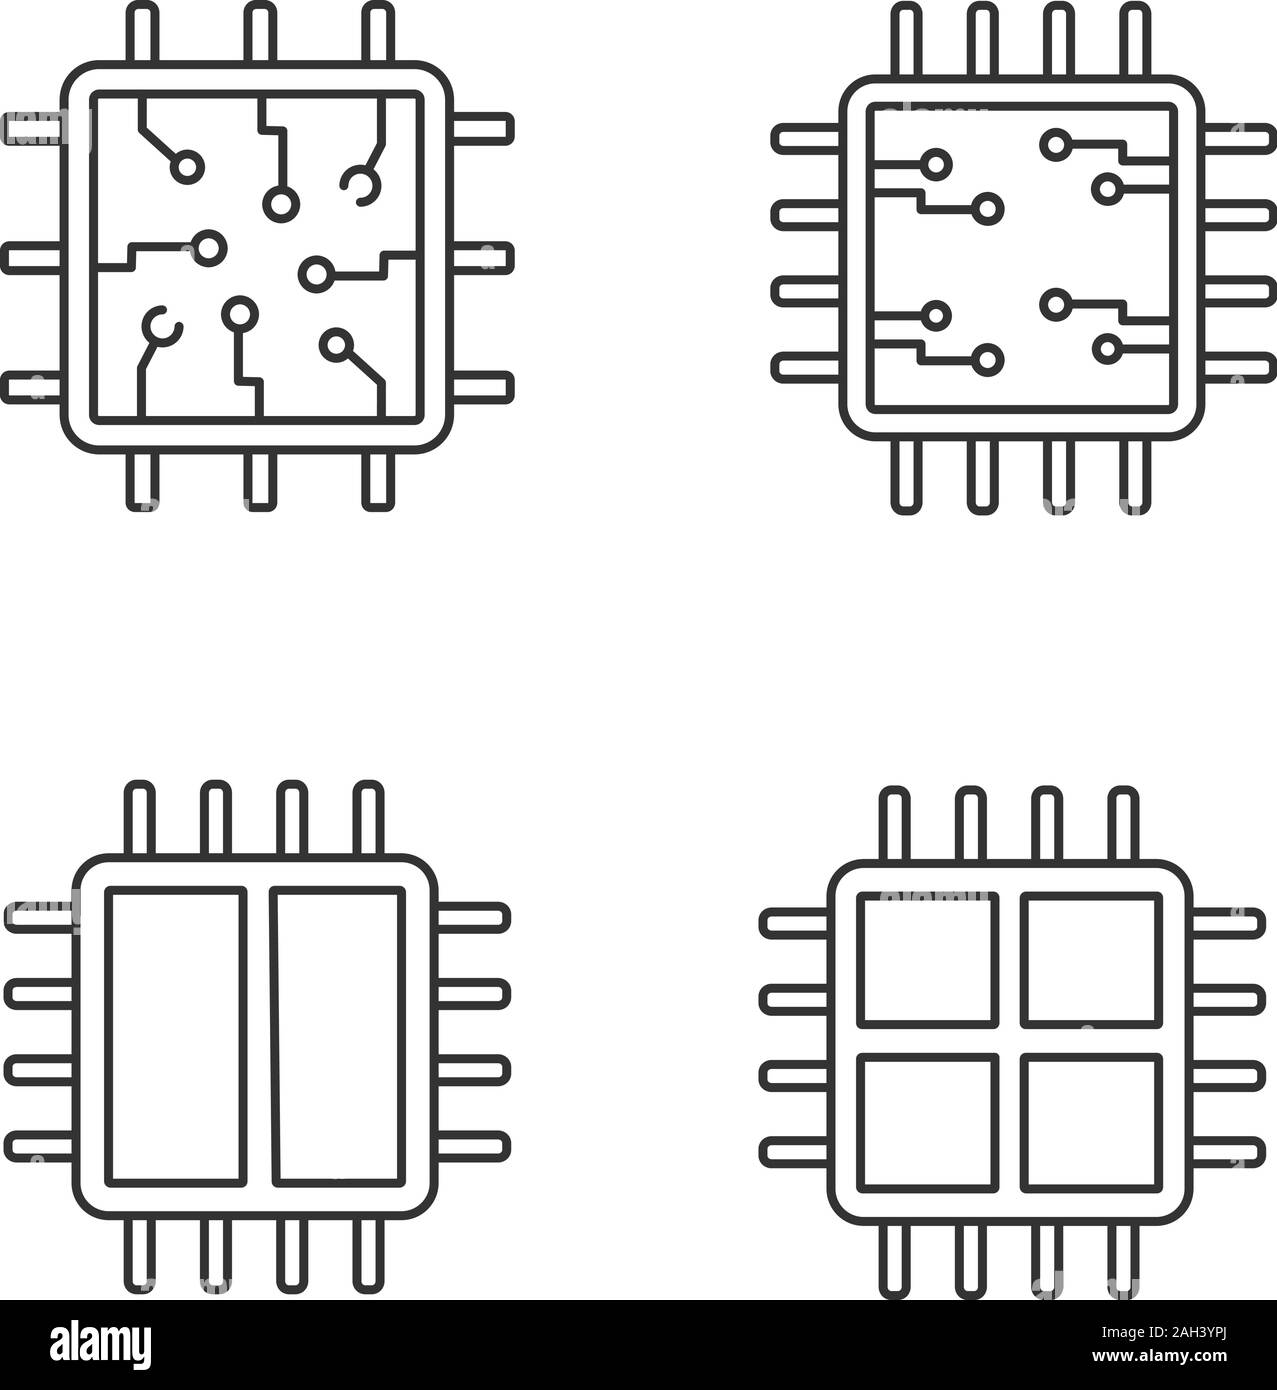 Linéaire processeurs icons set. Puce, microprocesseur, unité intégrée, à deux et quatre cœurs. Fine ligne contour des symboles. Grandes lignes vectorielles Illustration de Vecteur